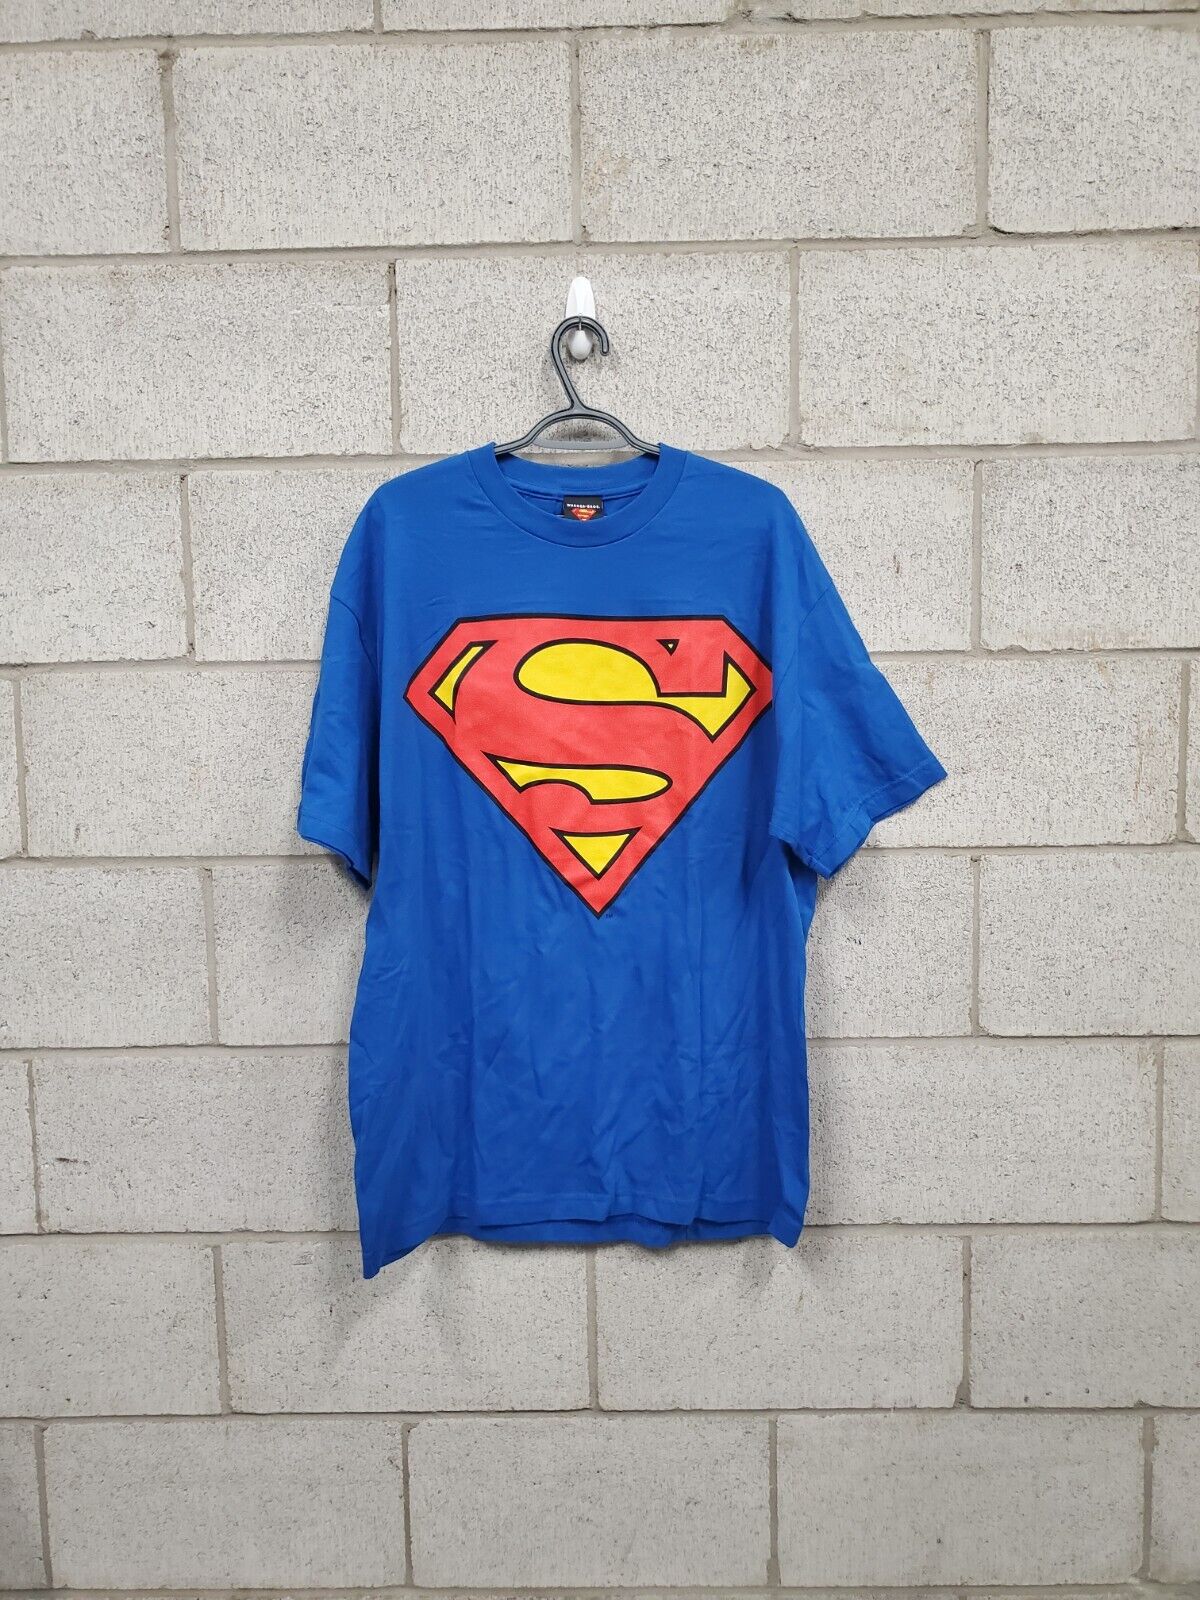 Mens Vintage Superman T-Shirt Size XL